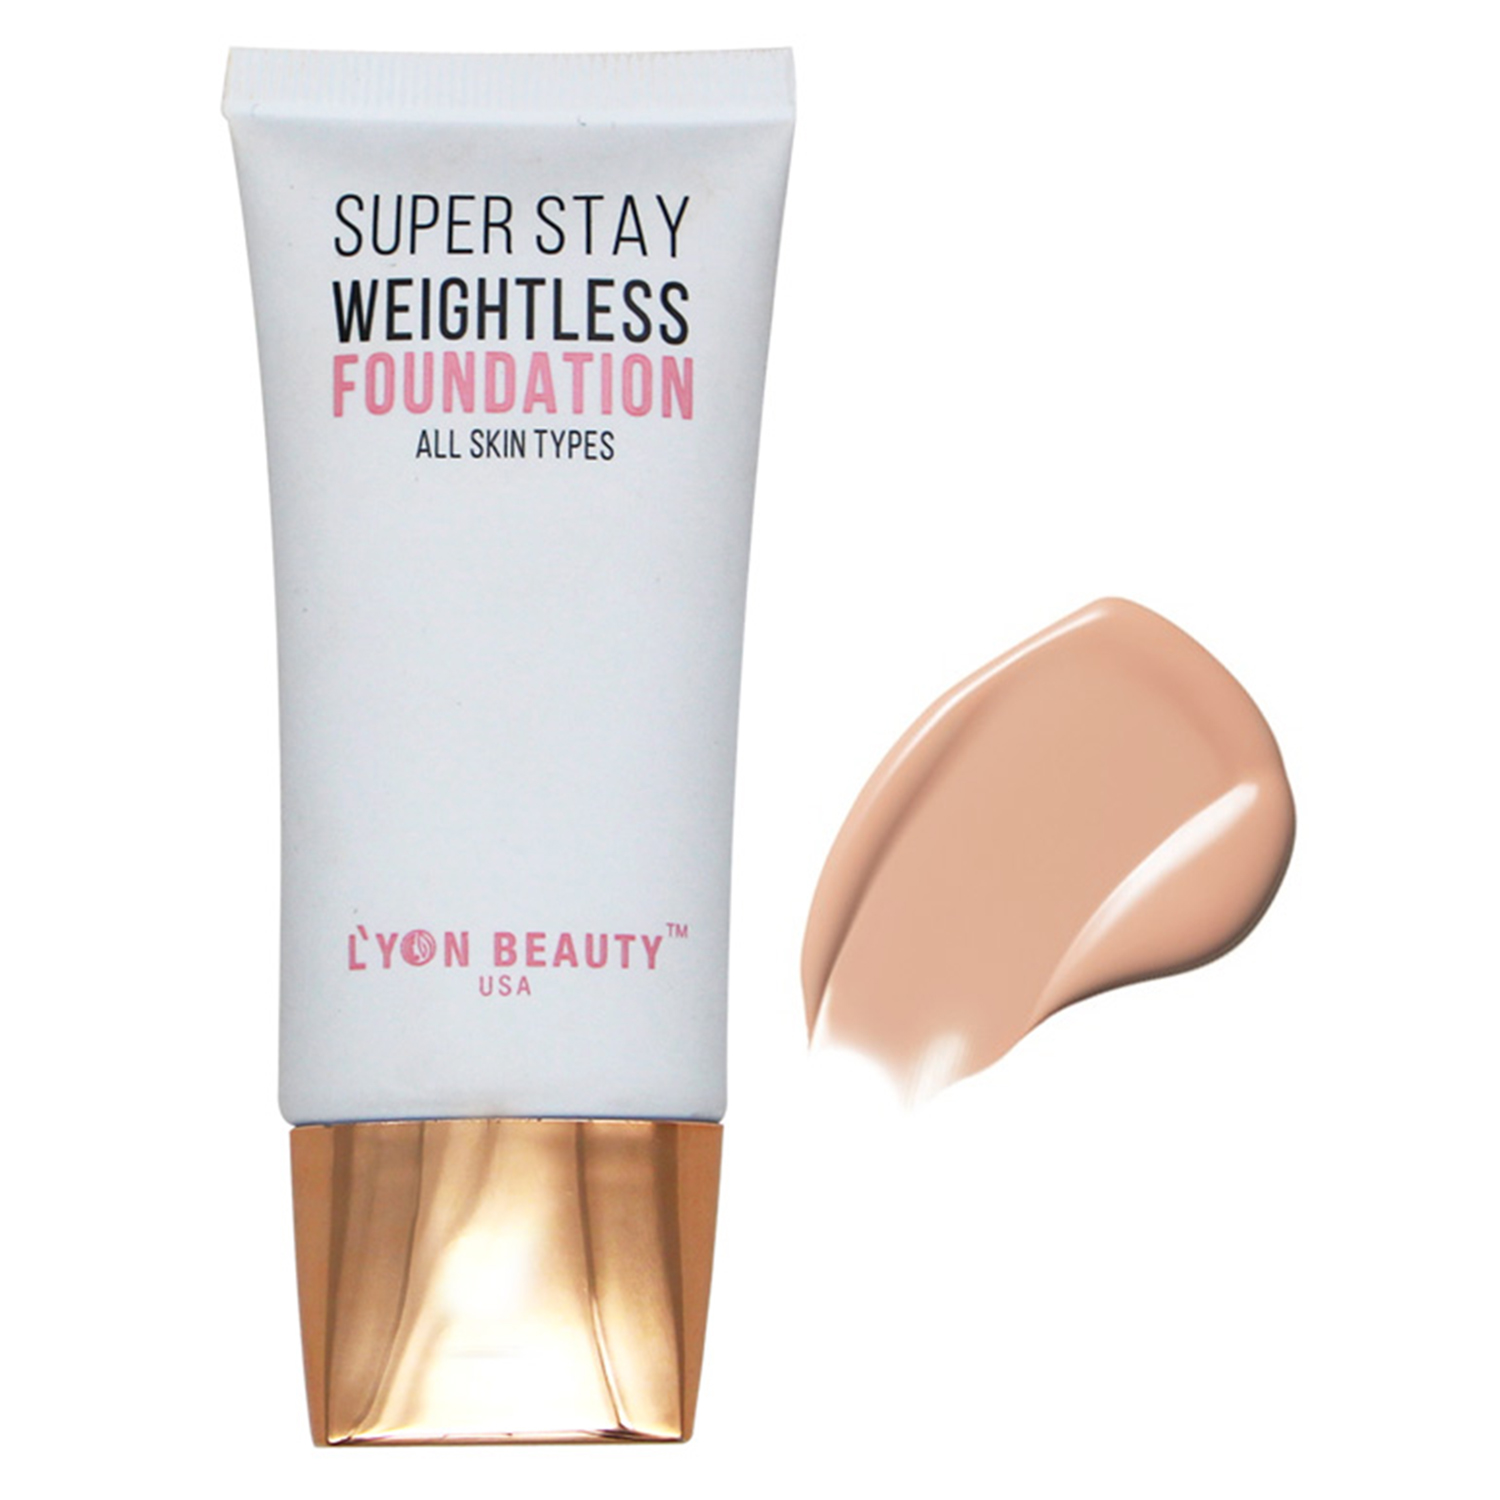 Lyon Beauty USA Super Stay Weightless Foundation, 30ml-Weightless Foundation - 02 Sand Sable